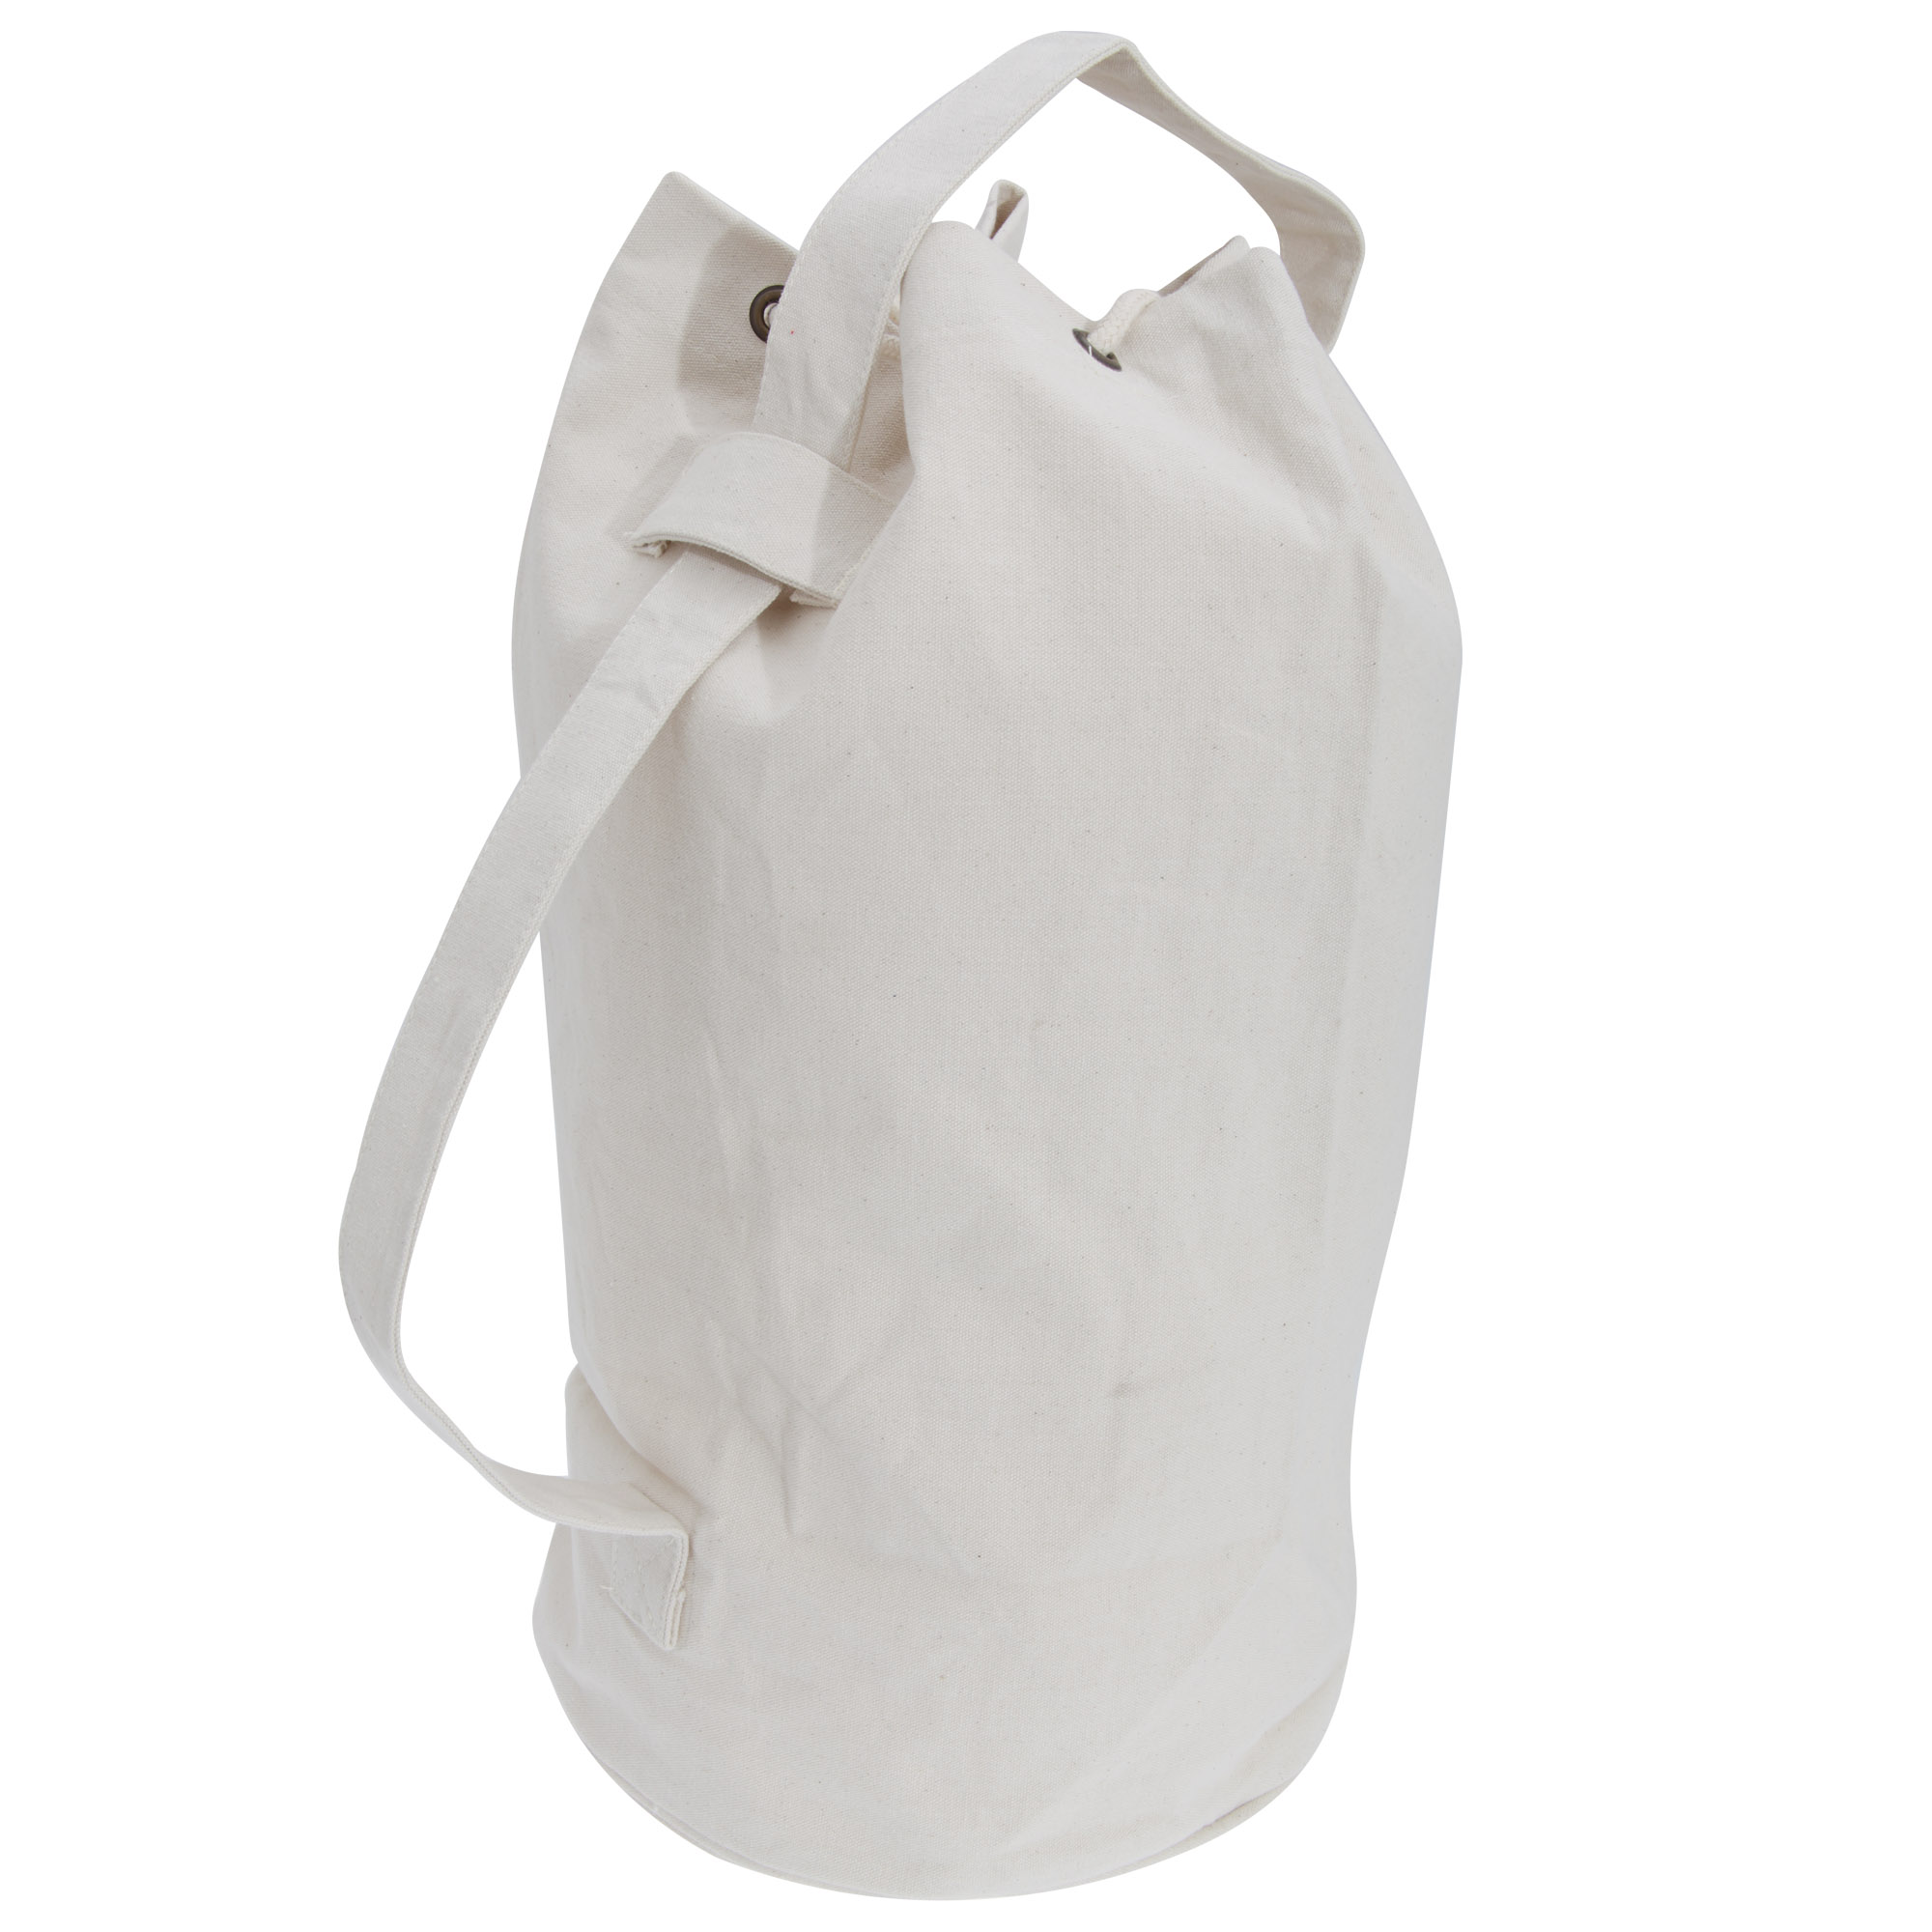 (クオドラ) Quadra キャンバス 巾着タイプ ダッフルバッグ かばん 30リットル (2パック) 【海外通販】